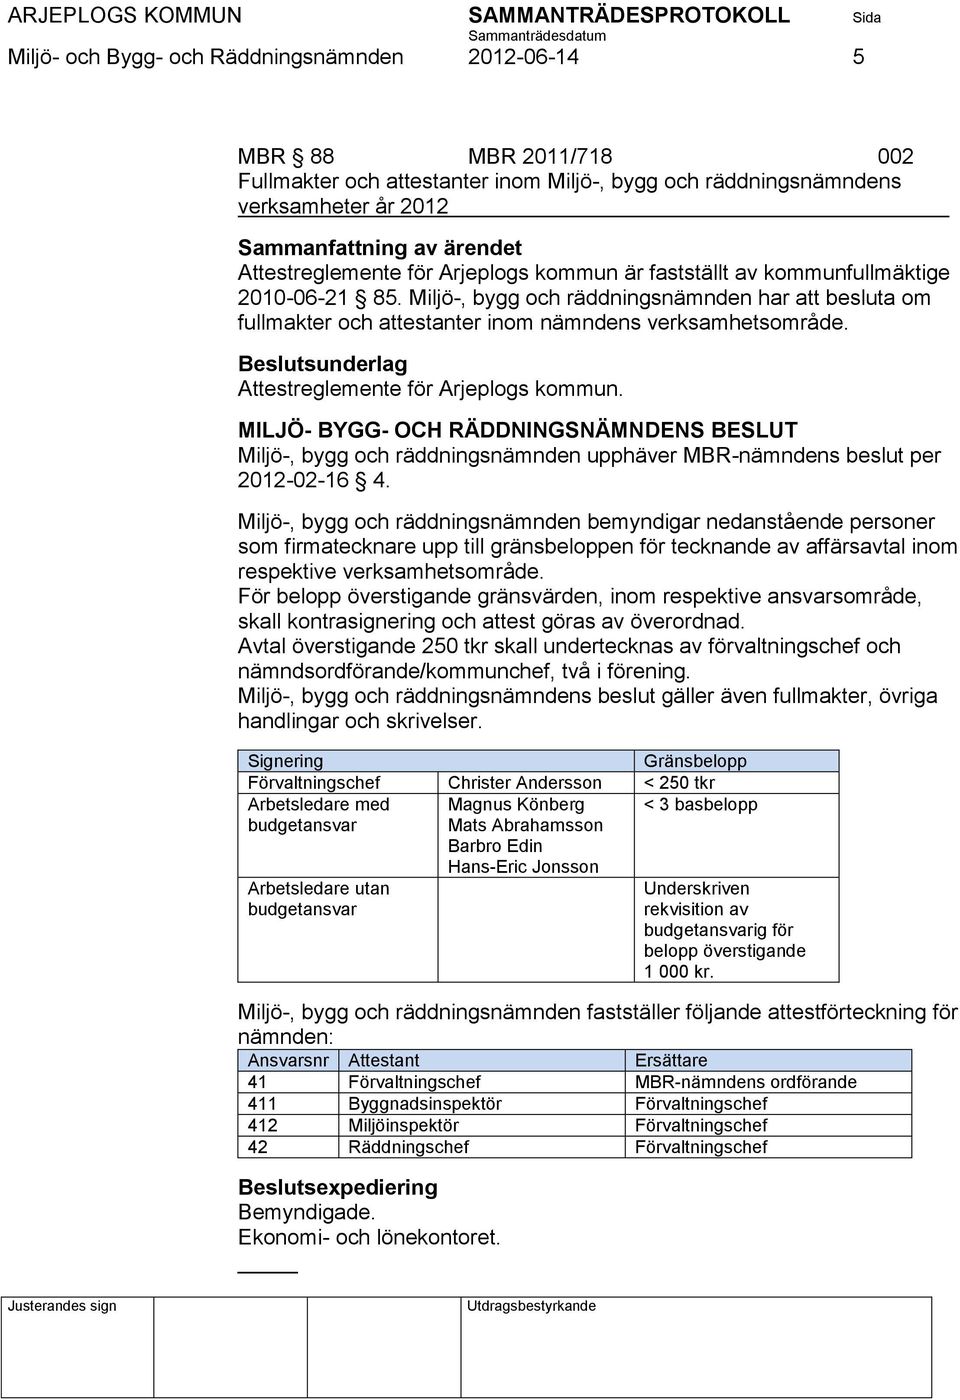 Attestreglemente för Arjeplogs kommun. Miljö-, bygg och räddningsnämnden upphäver MBR-nämndens beslut per 2012-02-16 4.